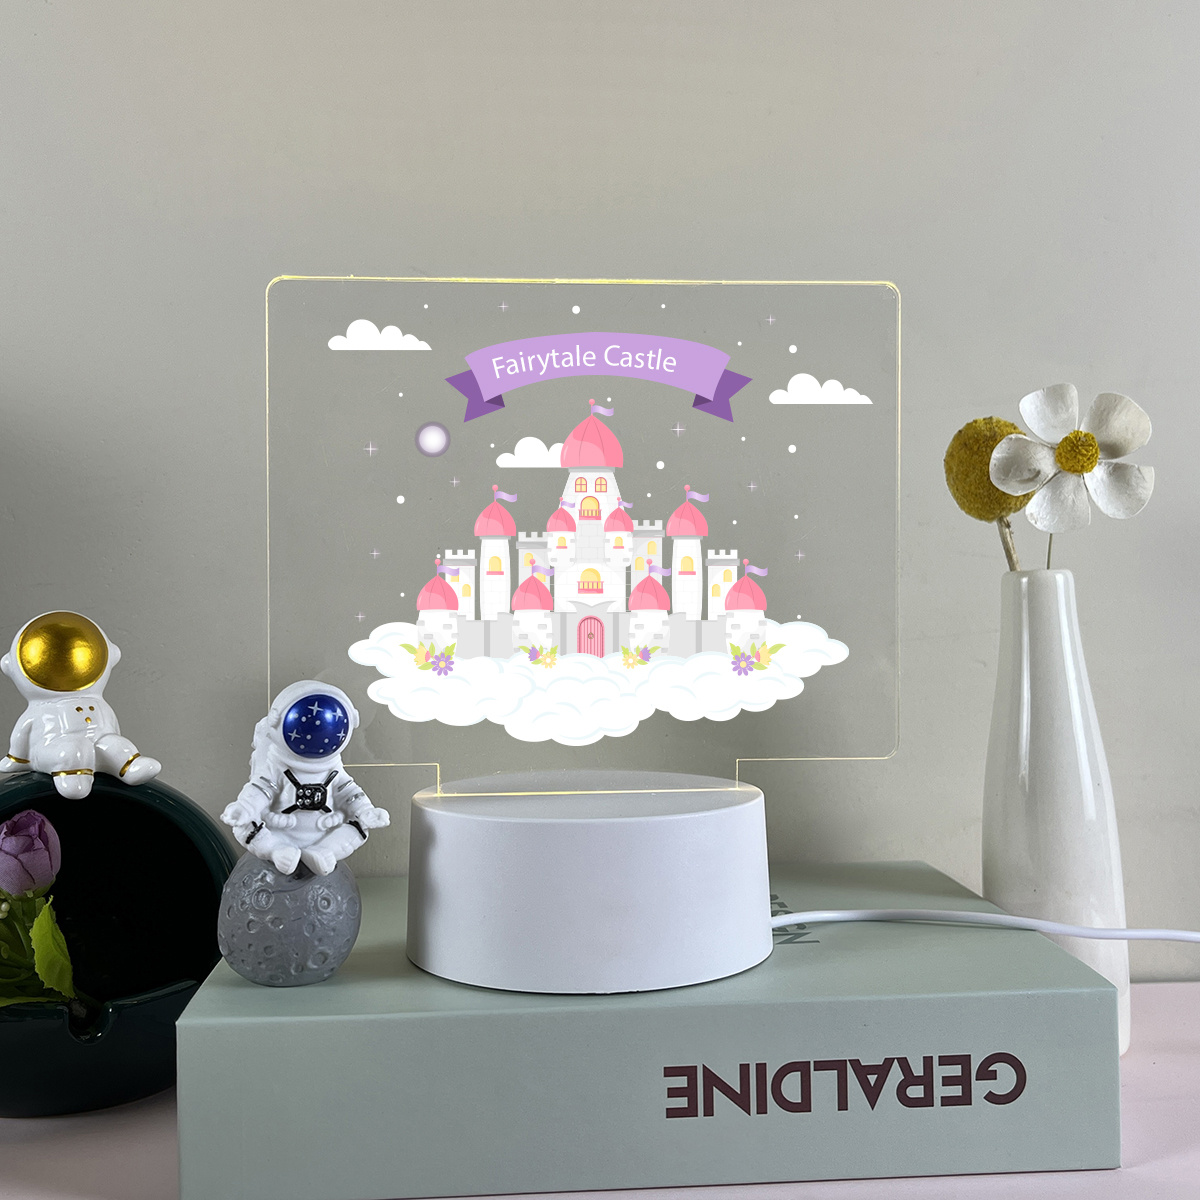 Lampe de chevet, Veilleuse Tactile Pleine Lune Lampe 3D LED illusion, Idée  cadeau Noël anniversaire garçon et fille Lampe de nuit chambre d'enfant ou